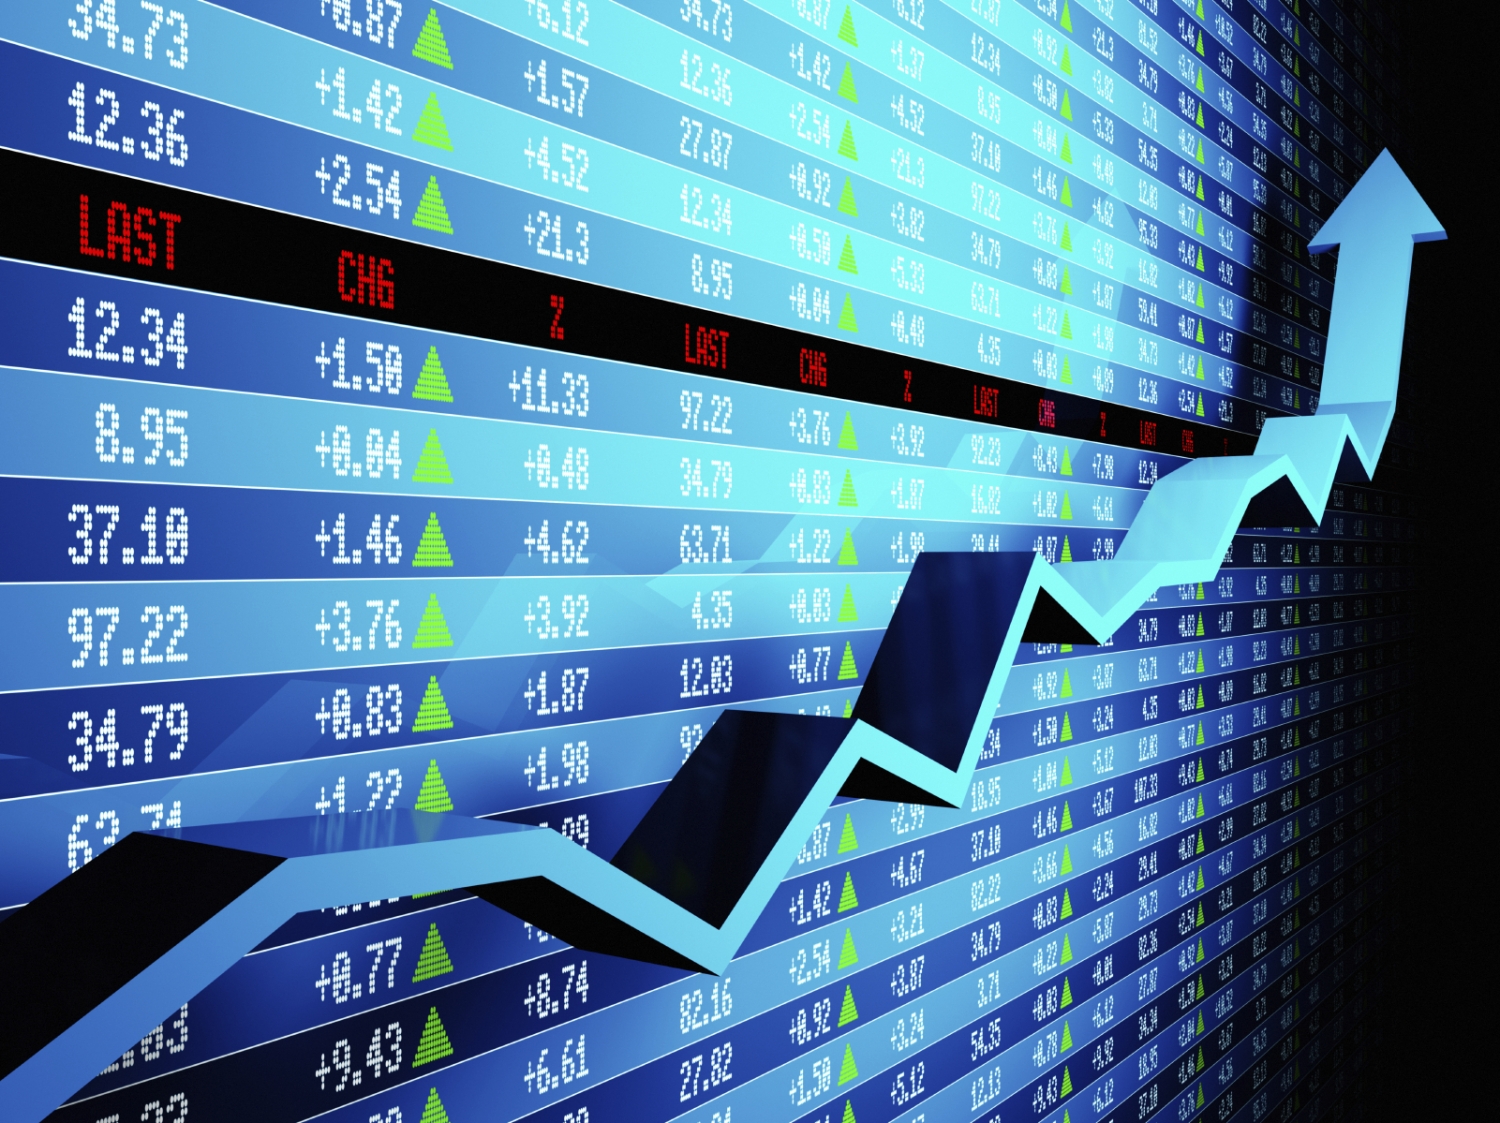 Tin nhanh chứng khoán ngày 28/11: Thị trường tiếp tục thăng hoa, VN Index dễ dàng lấy lại mốc 1.000 điểm